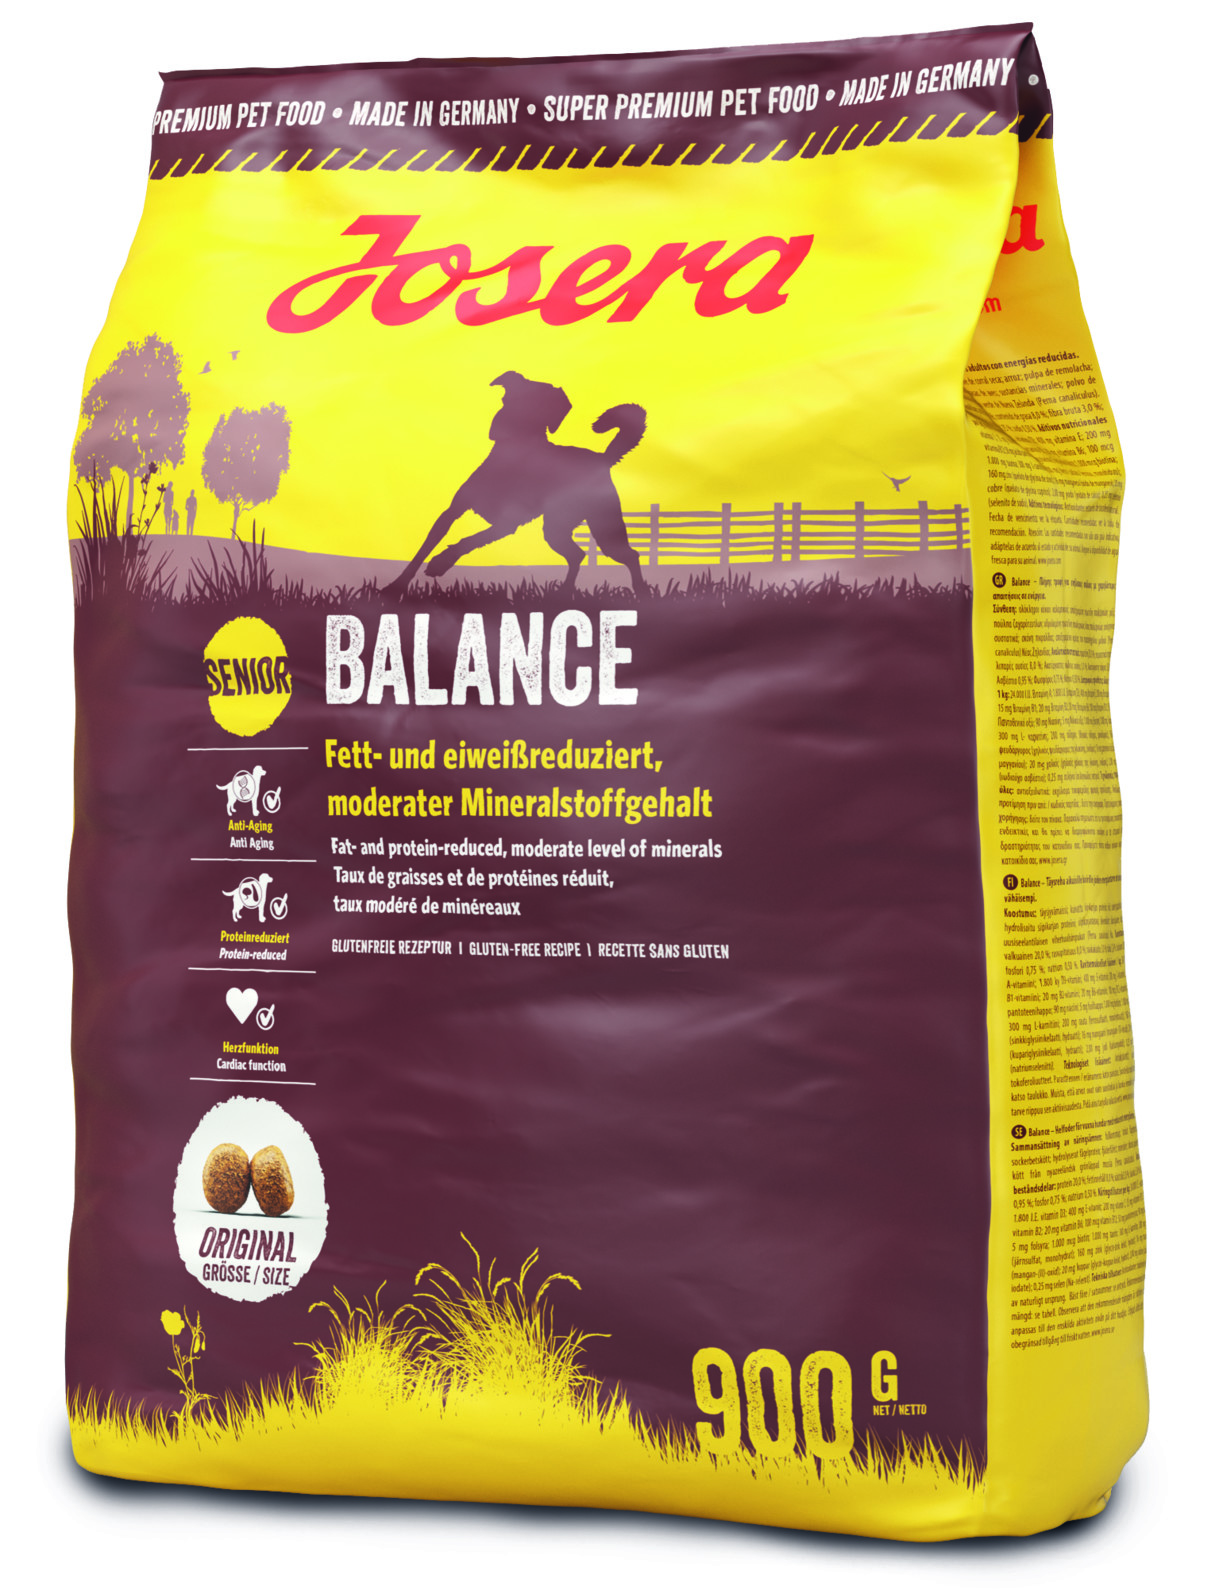 Josera Balance - Fett- und eiweißreduziert mit einem moderaten Mineralstoffgehalt 900g